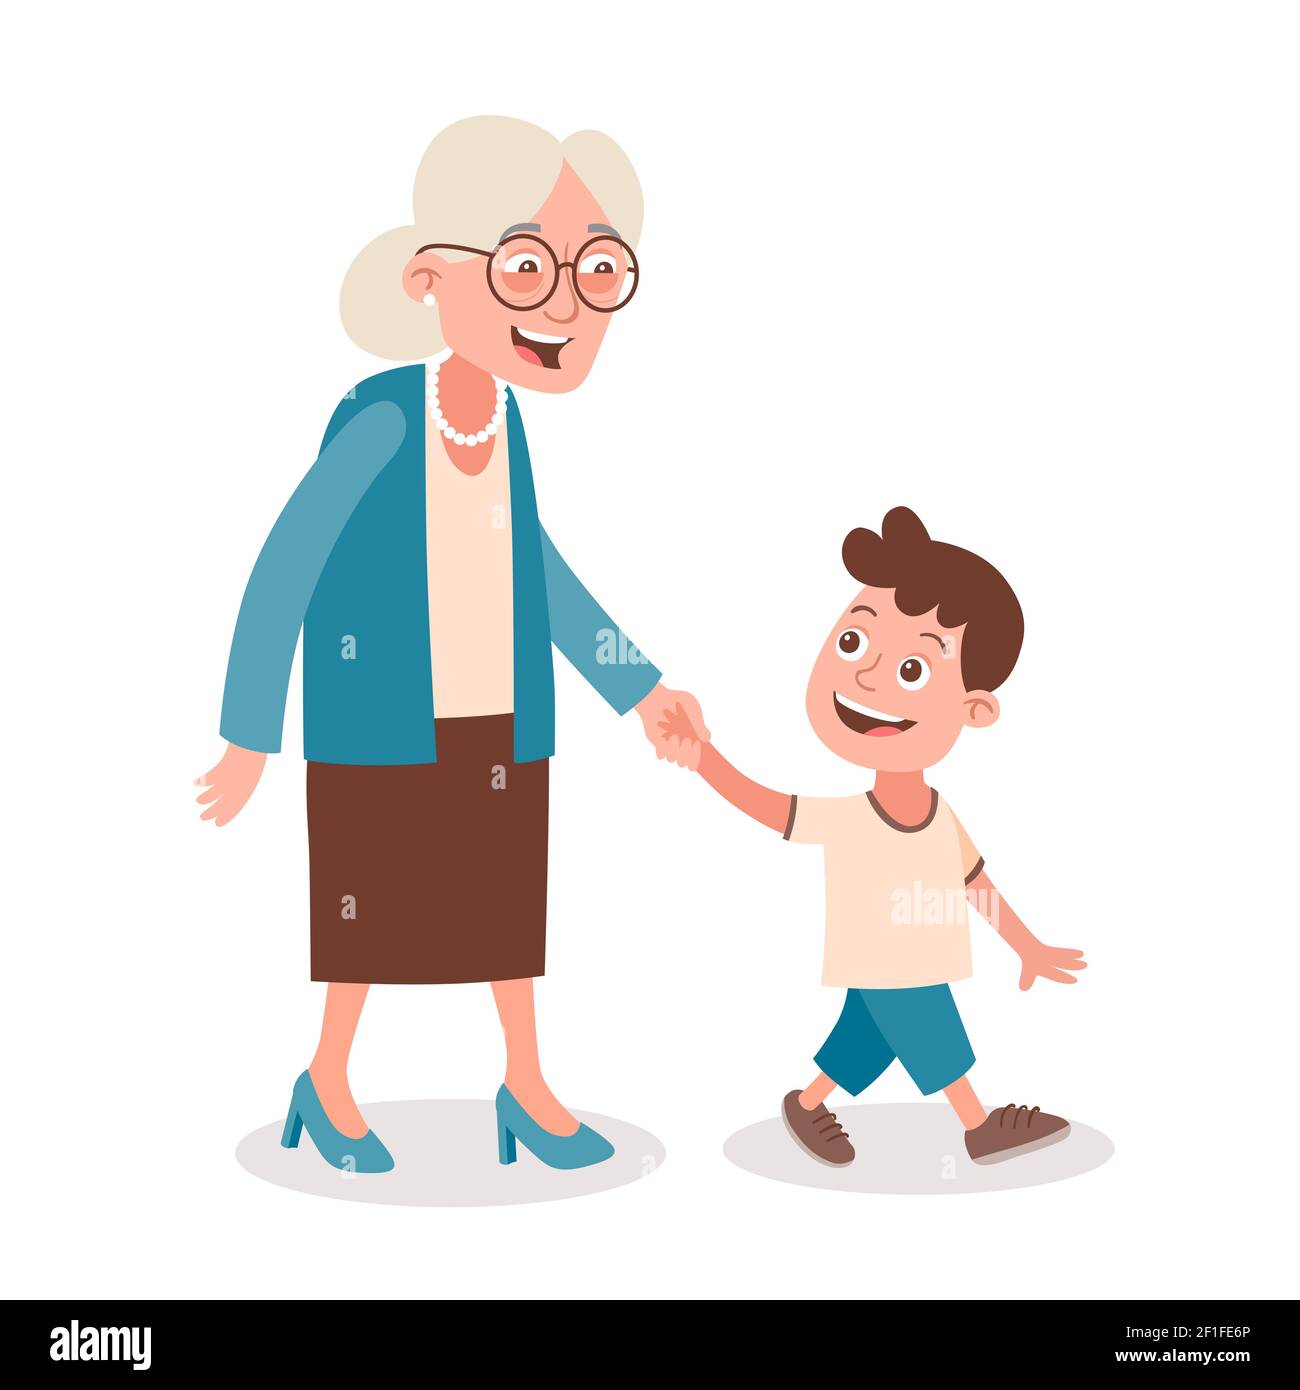 Großmutter und Enkel, die gehen und sprechen, nehmen ihn bei der Hand. Cartoon-Stil, isoliert auf weißem Hintergrund. Vektorgrafik. Stock Vektor